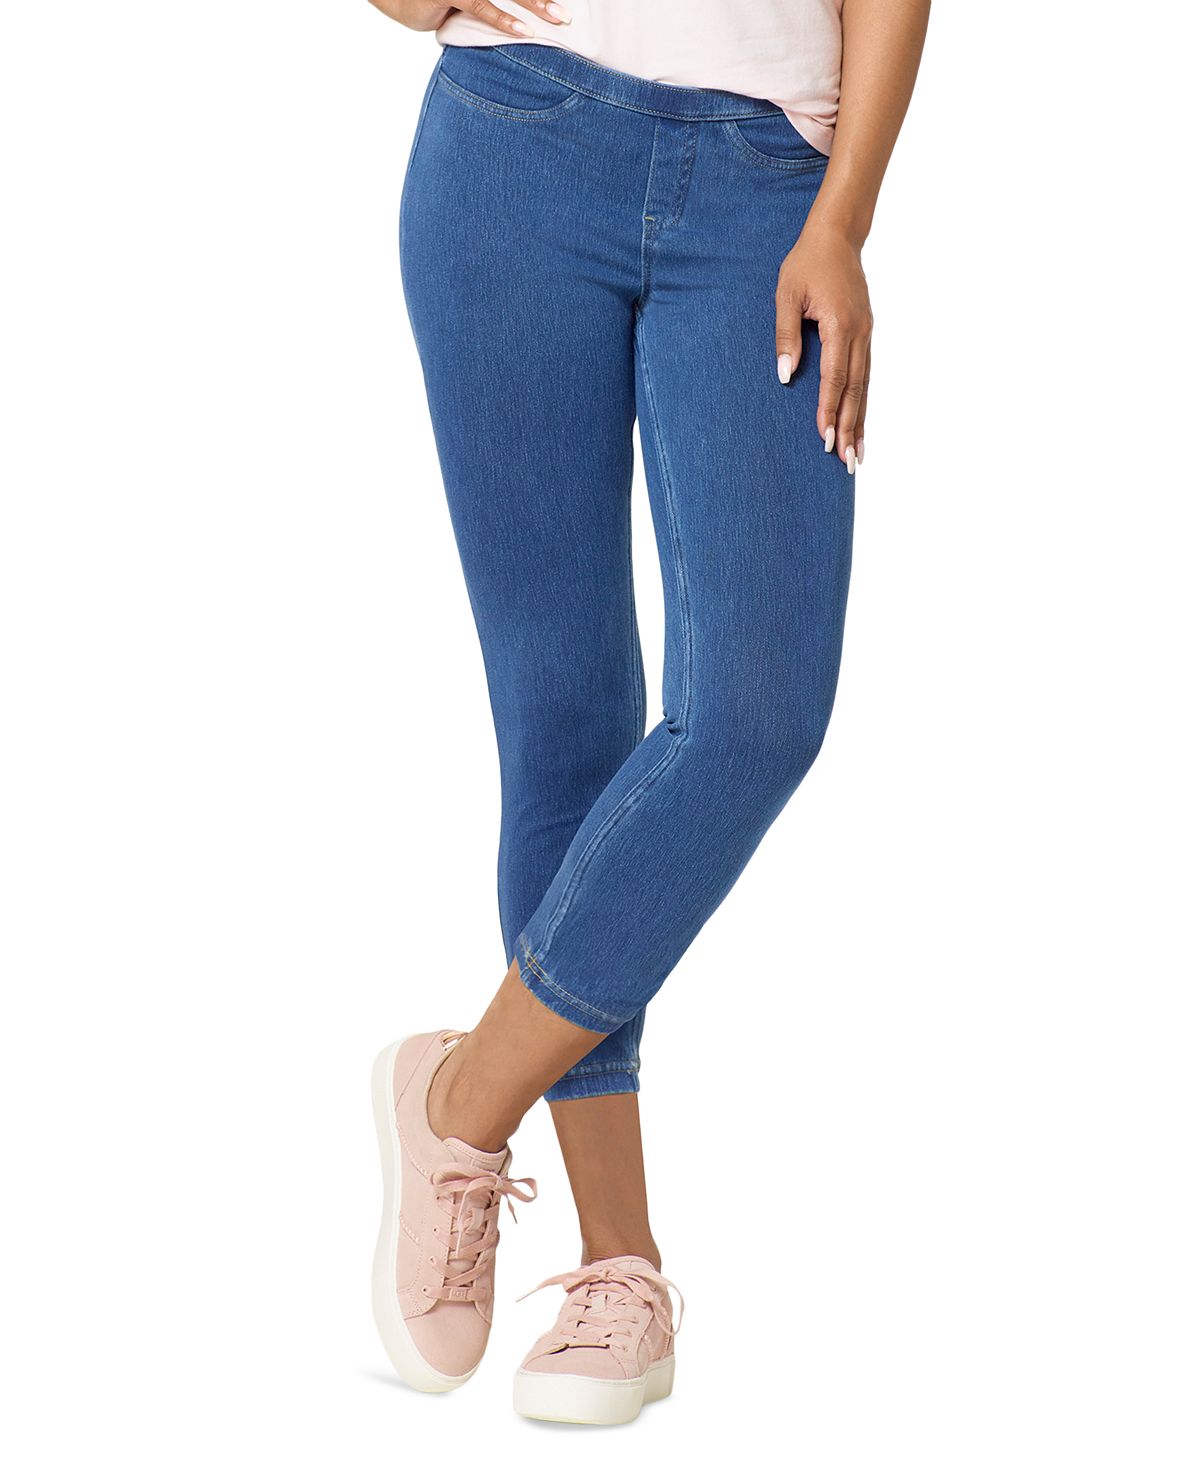 Женские джинсовые леггинсы-капри со средней посадкой без застежки Hue женские узкие компрессионные брюки со средней посадкой без застежки jones new york